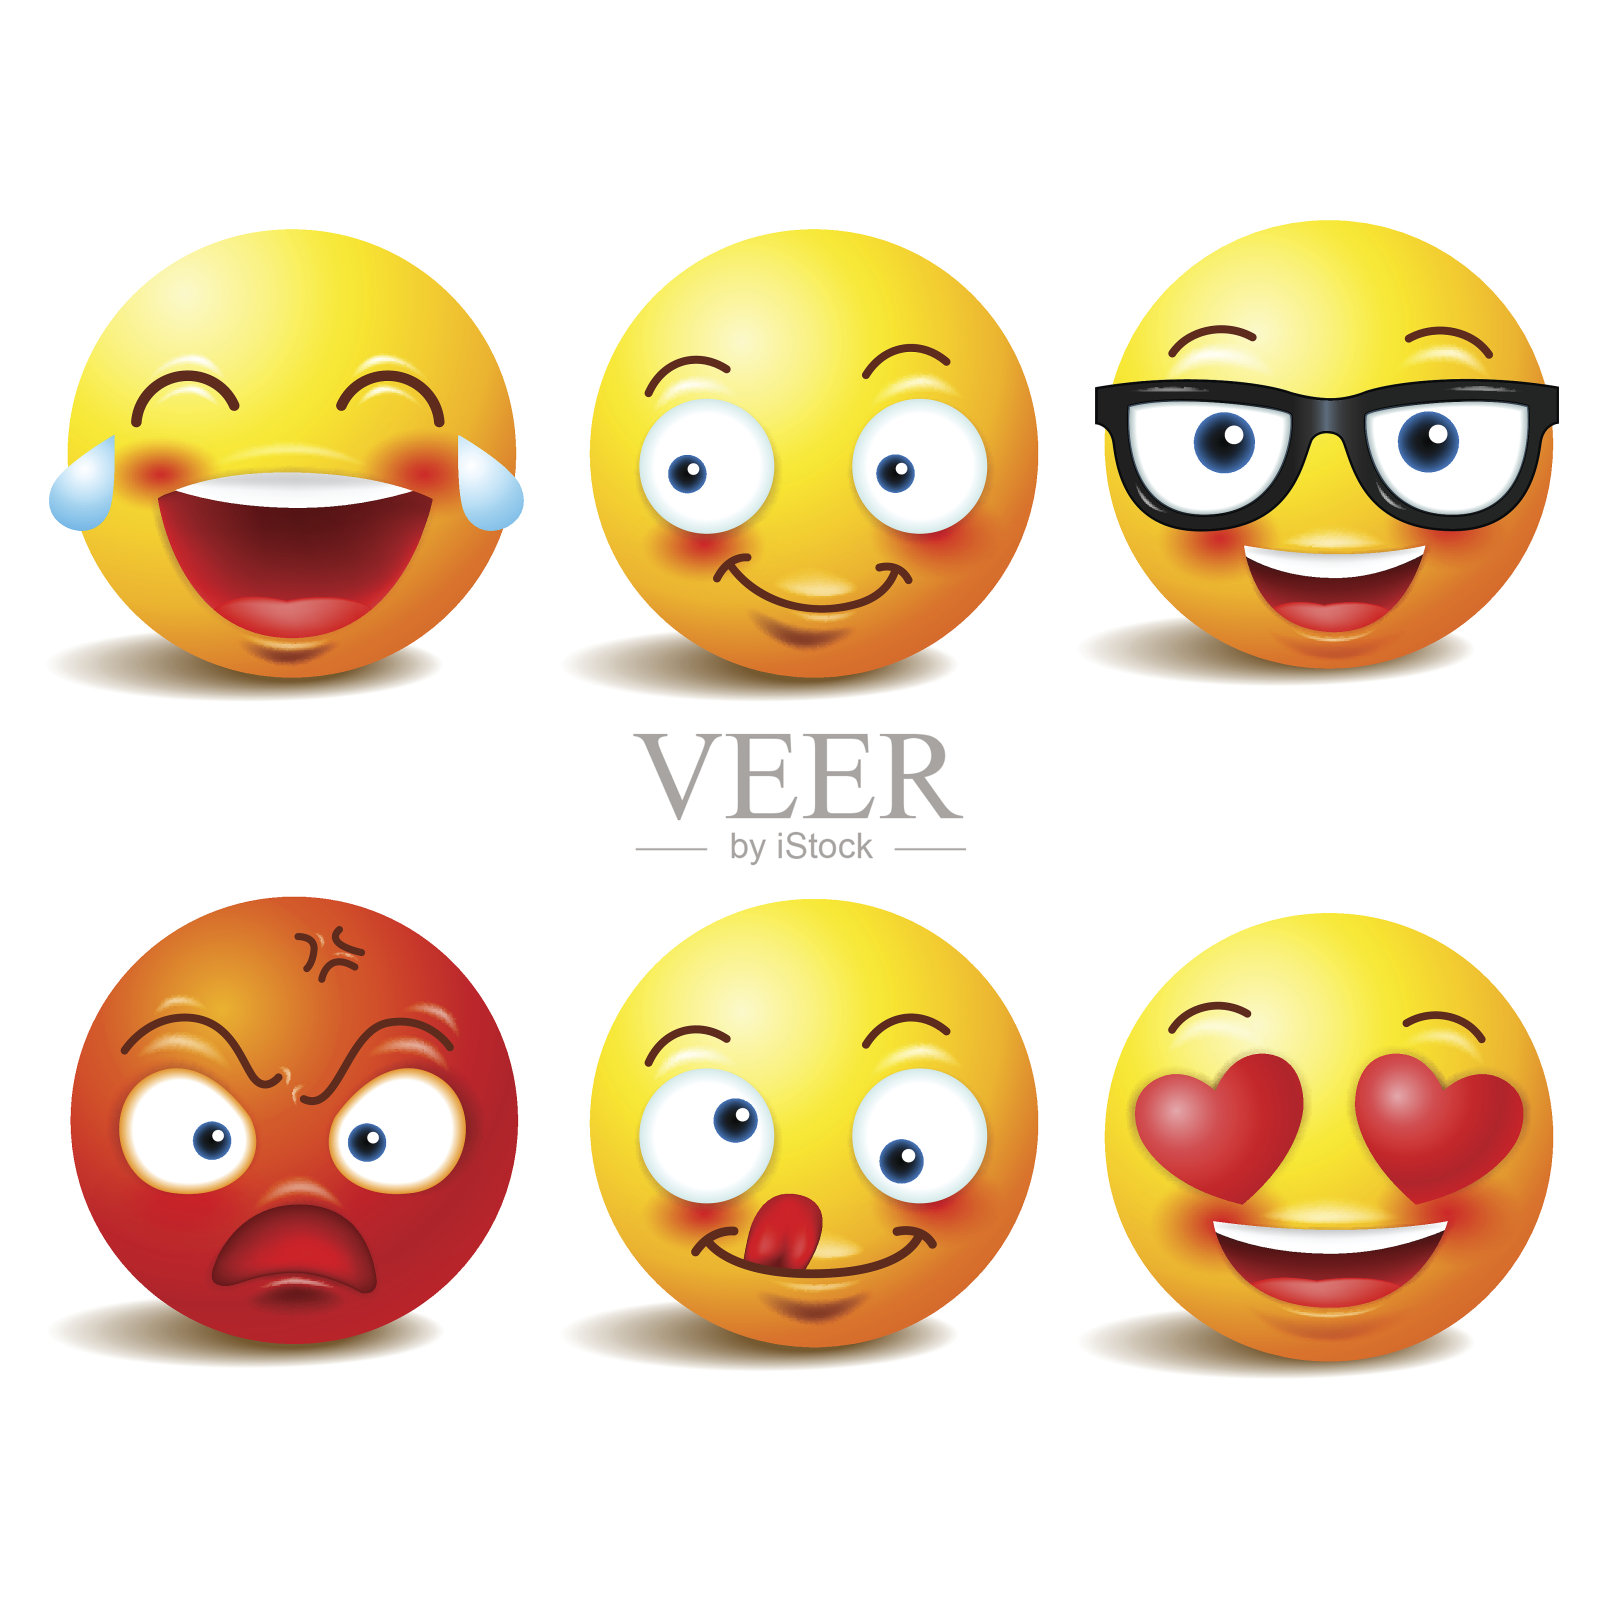 笑脸图标或黄色的表情符号与情感的有趣的脸在现实中。emojis .Vector插图插画图片素材